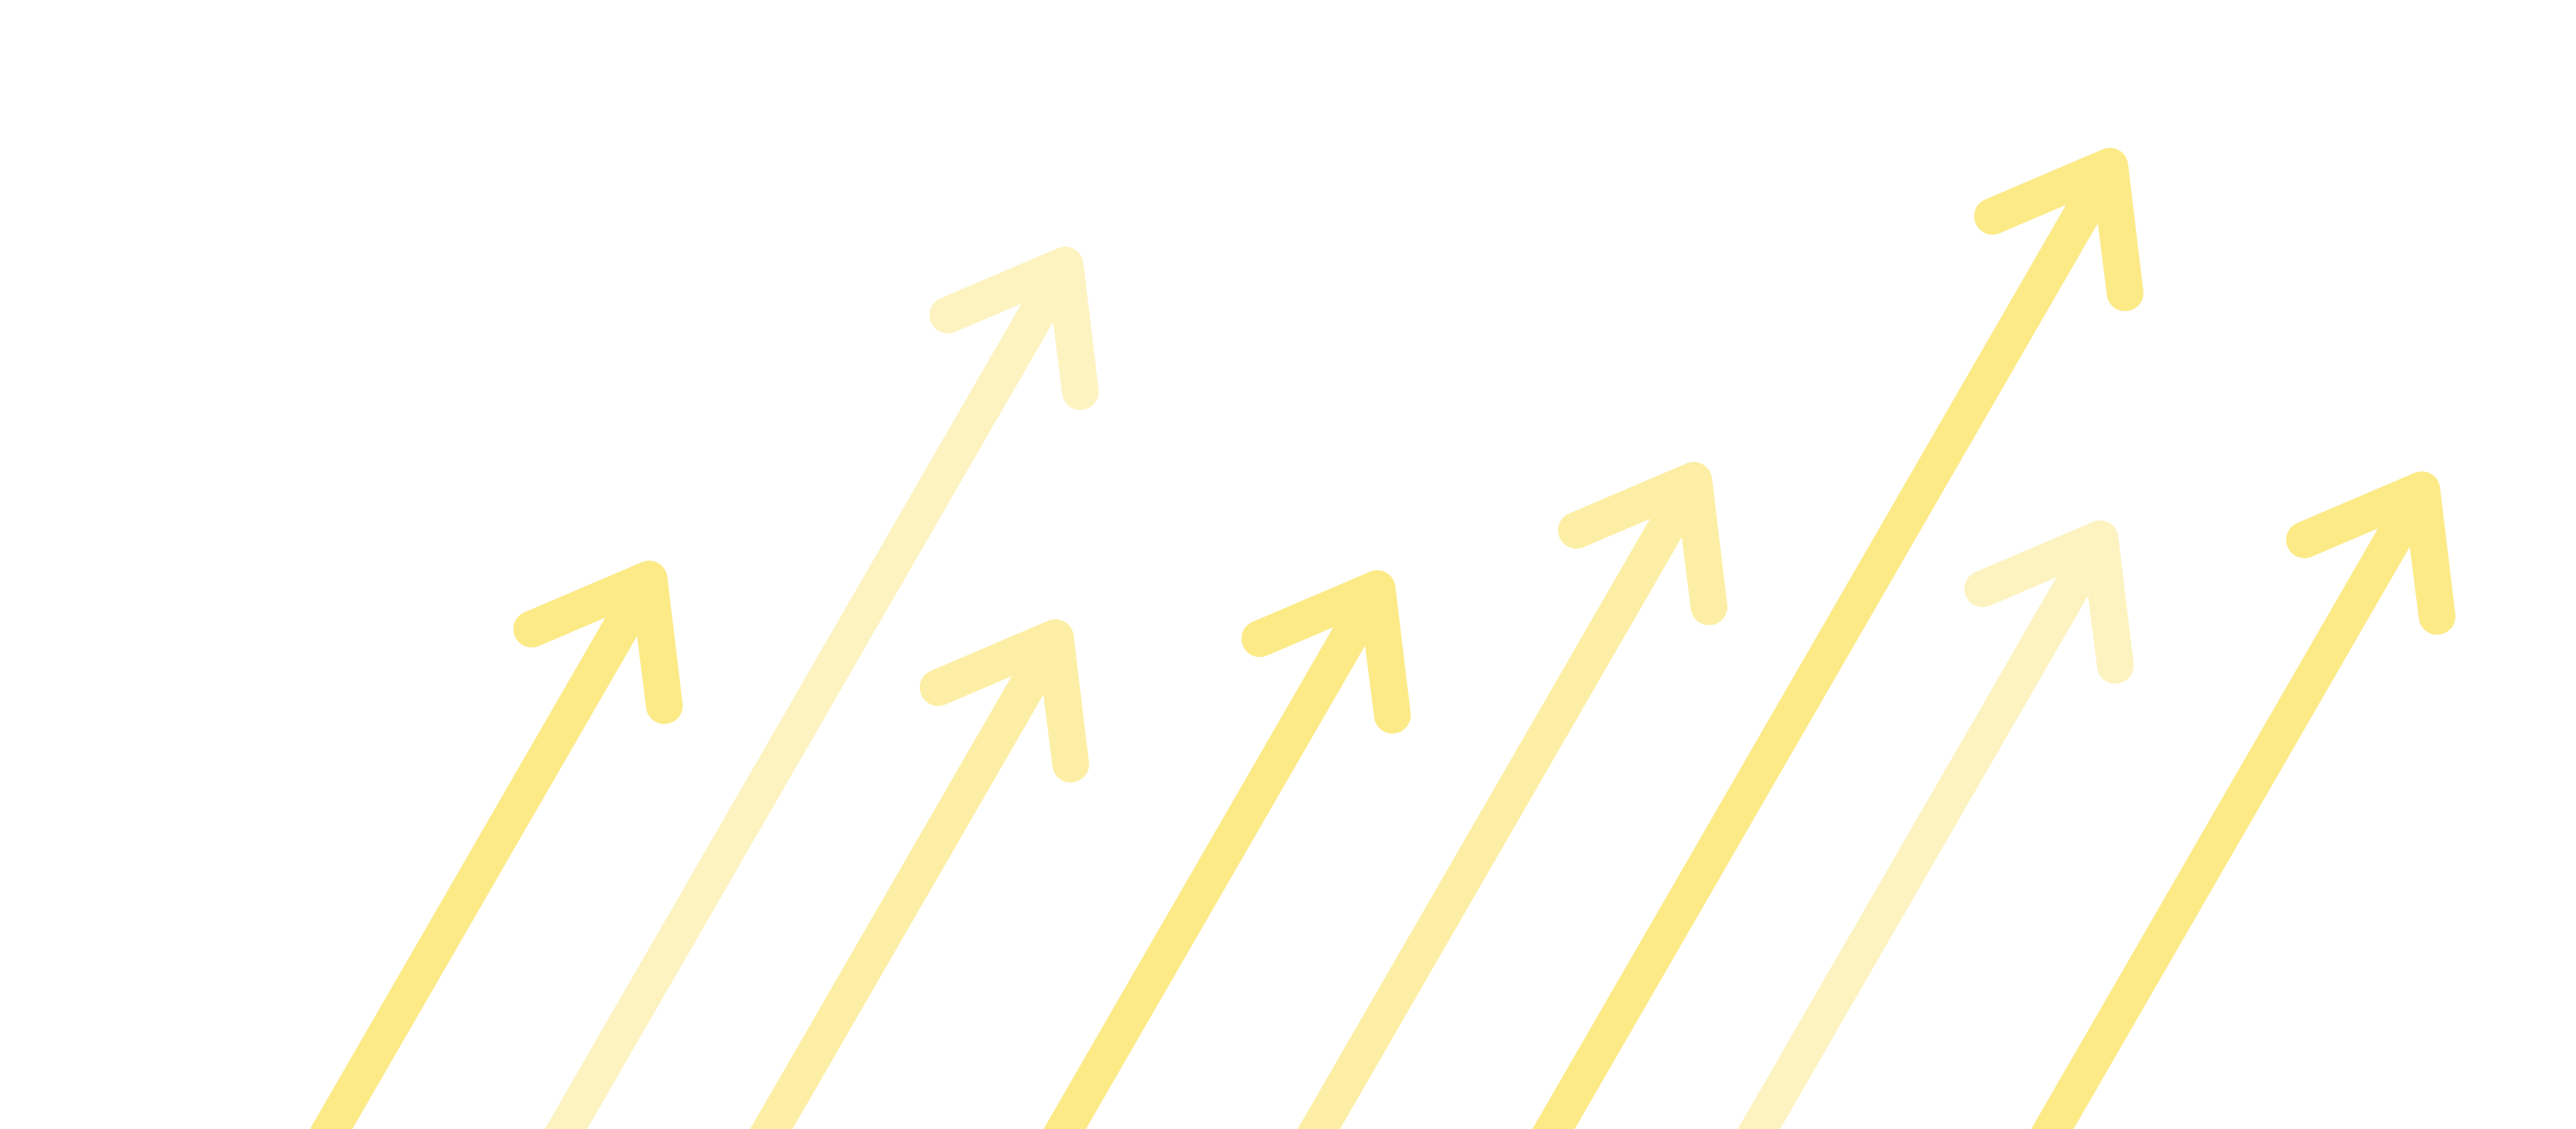 Mehrere Pfeile, die von links nach rechts angeordnet sind und nach oben zeigen, stehen für Geschäftswachstum